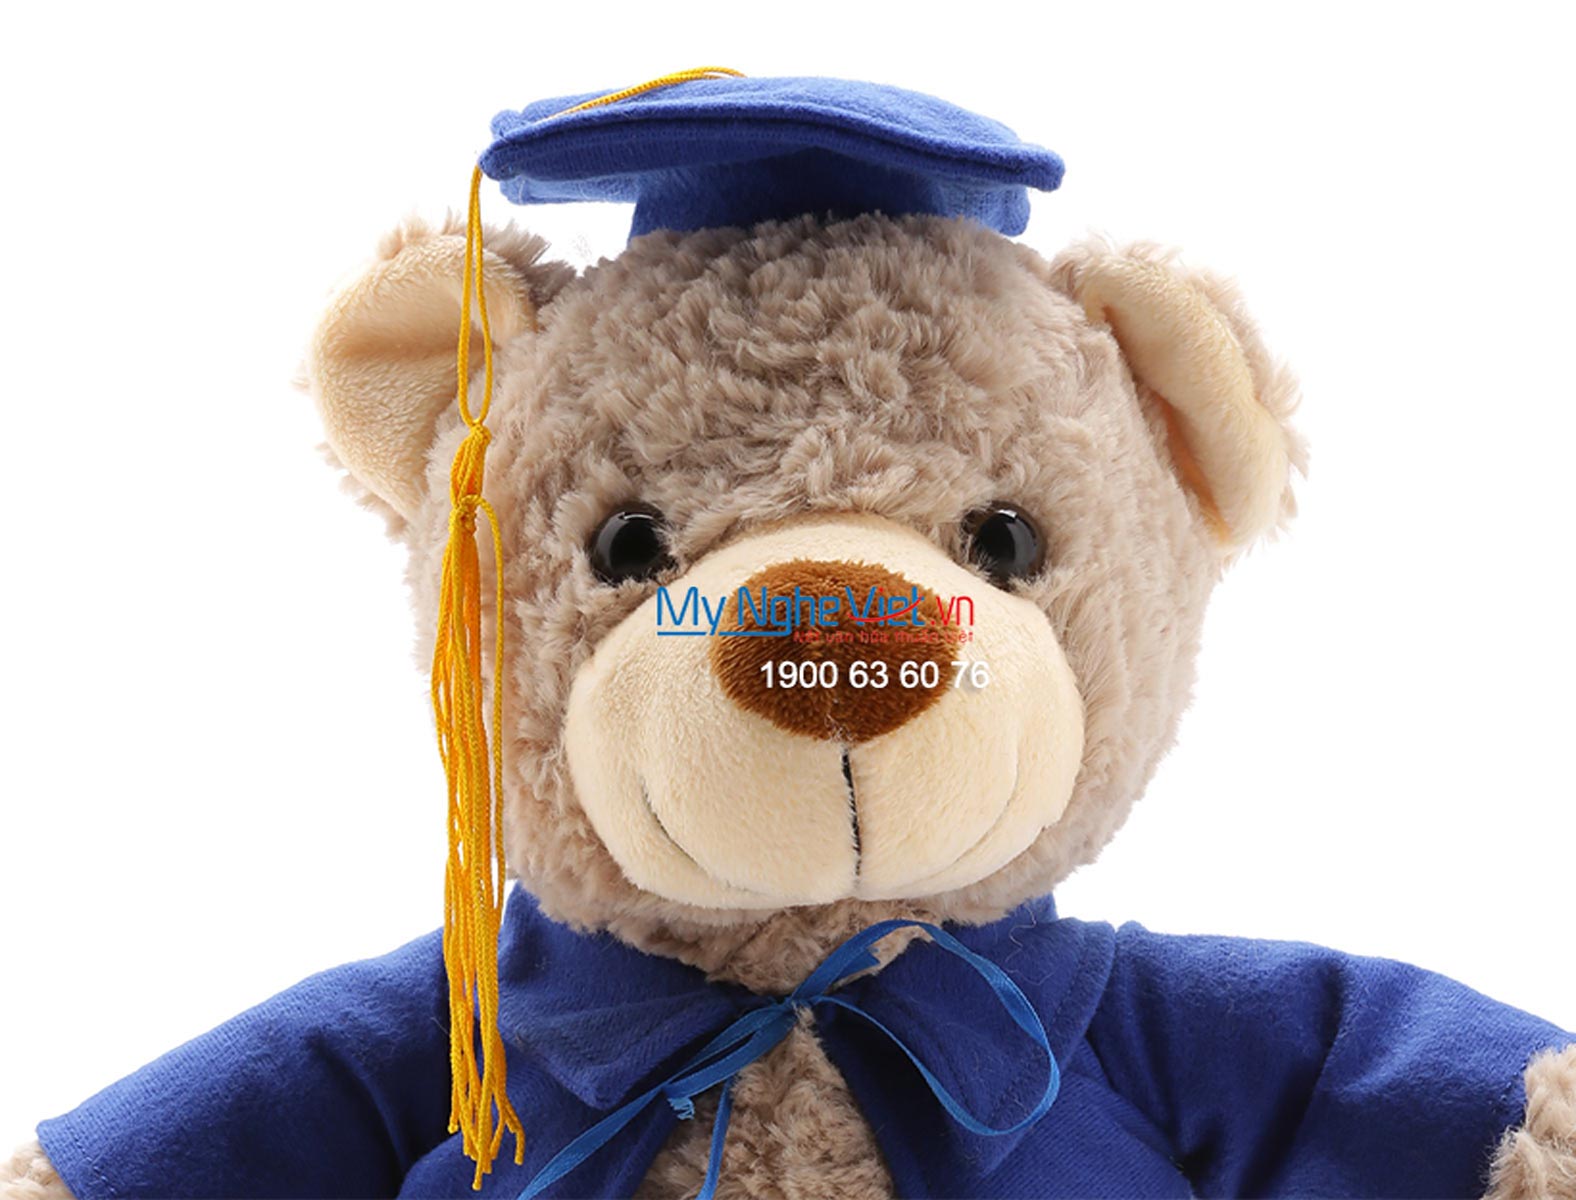 Gấu tốt nghiệp xám QTN-GBN02